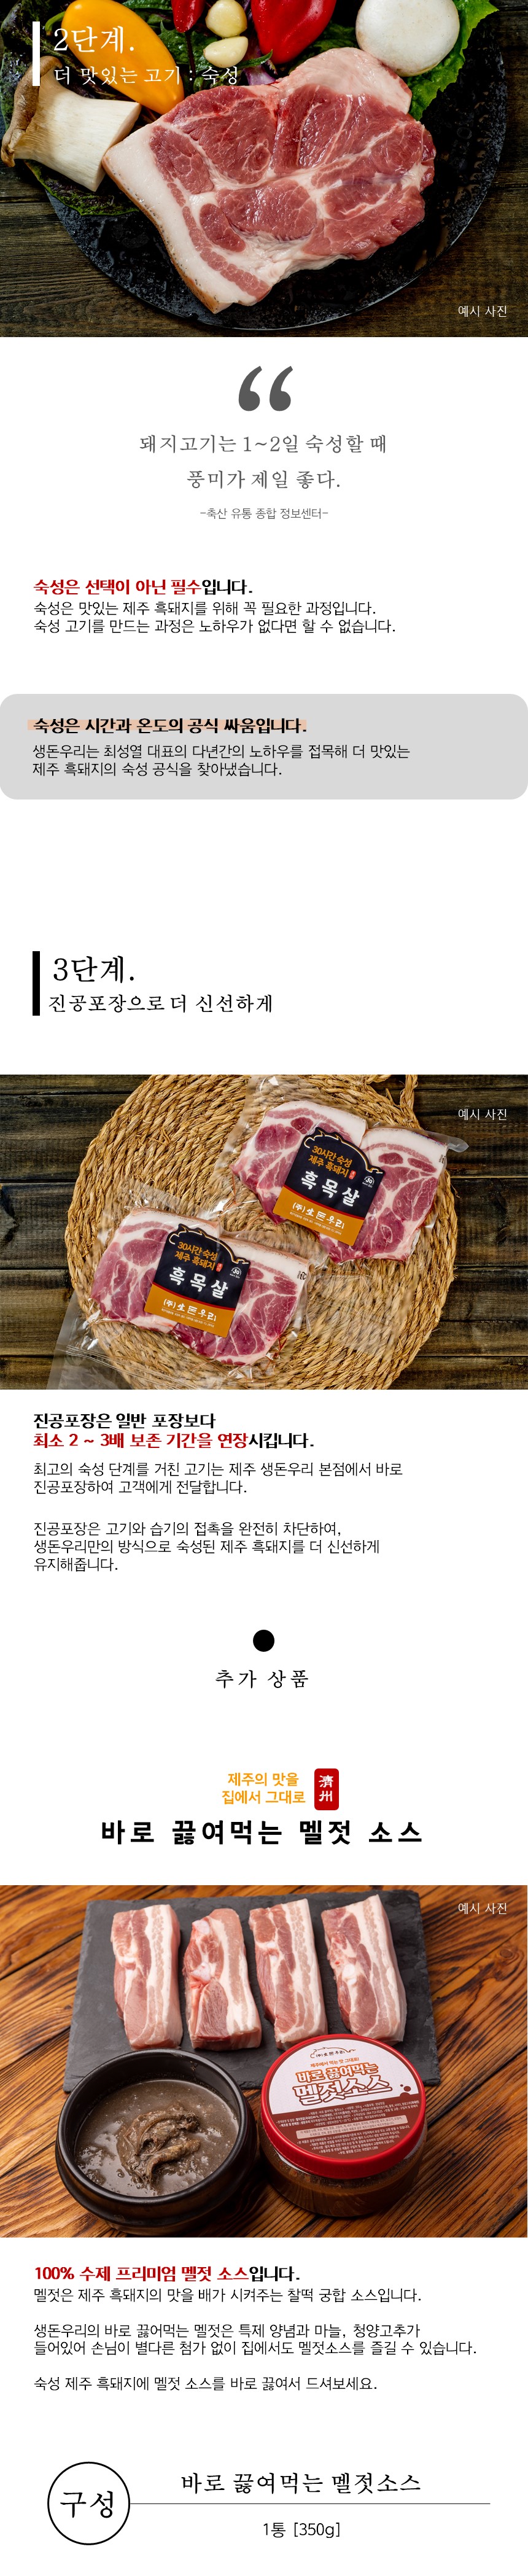 [냉장]30숙성 제주 흑돼지 목살 1kg